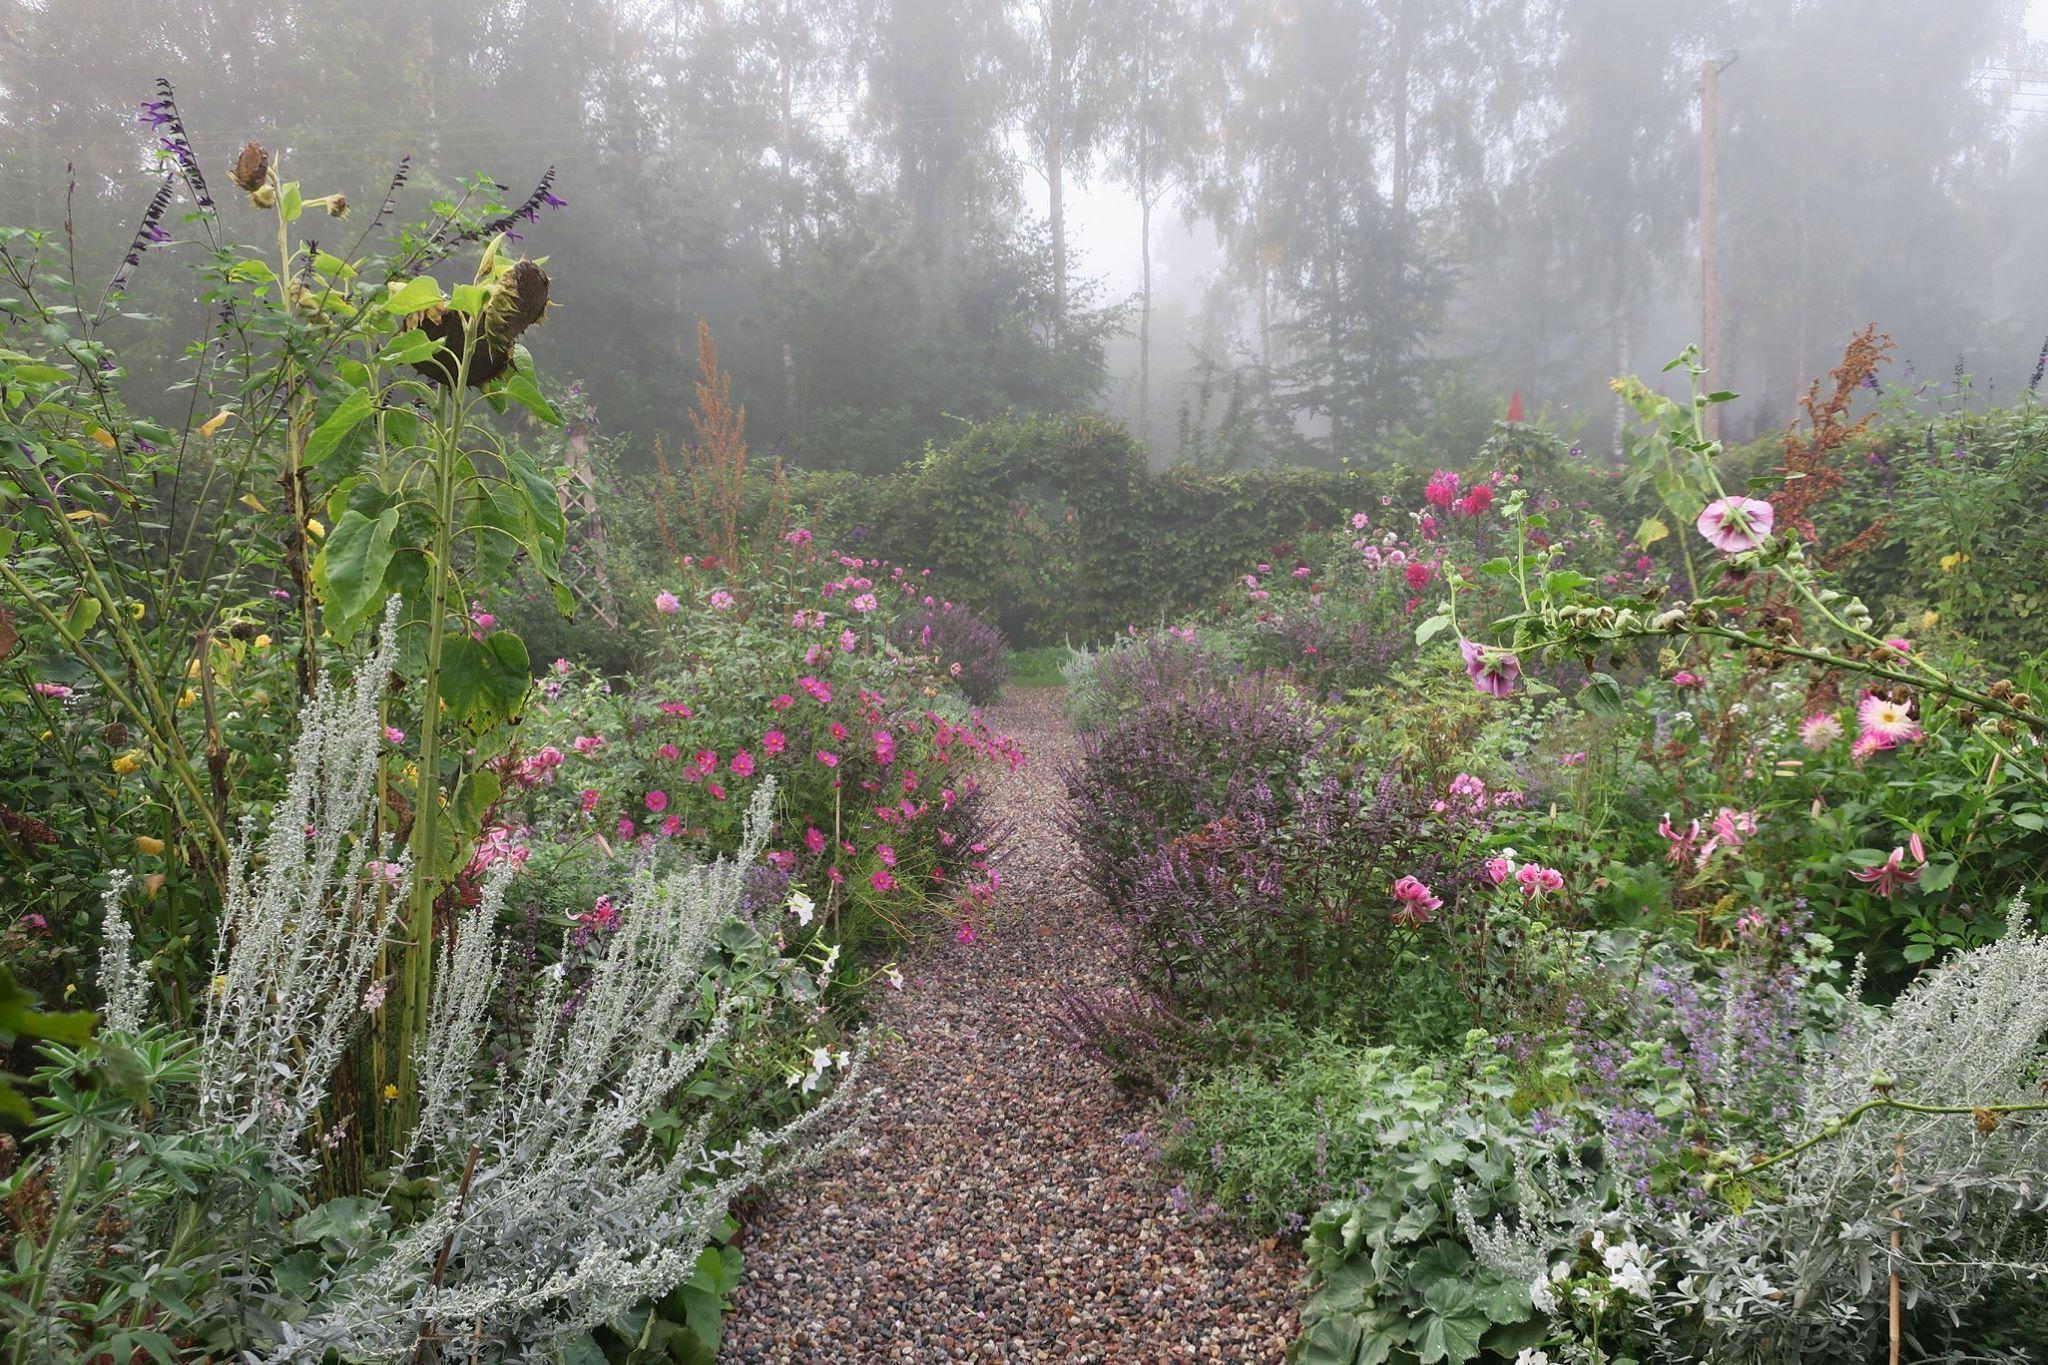  Łąka i ogród spowite w mgły wyglądają magicznie. (Fot. Katarzyna Bellingham)